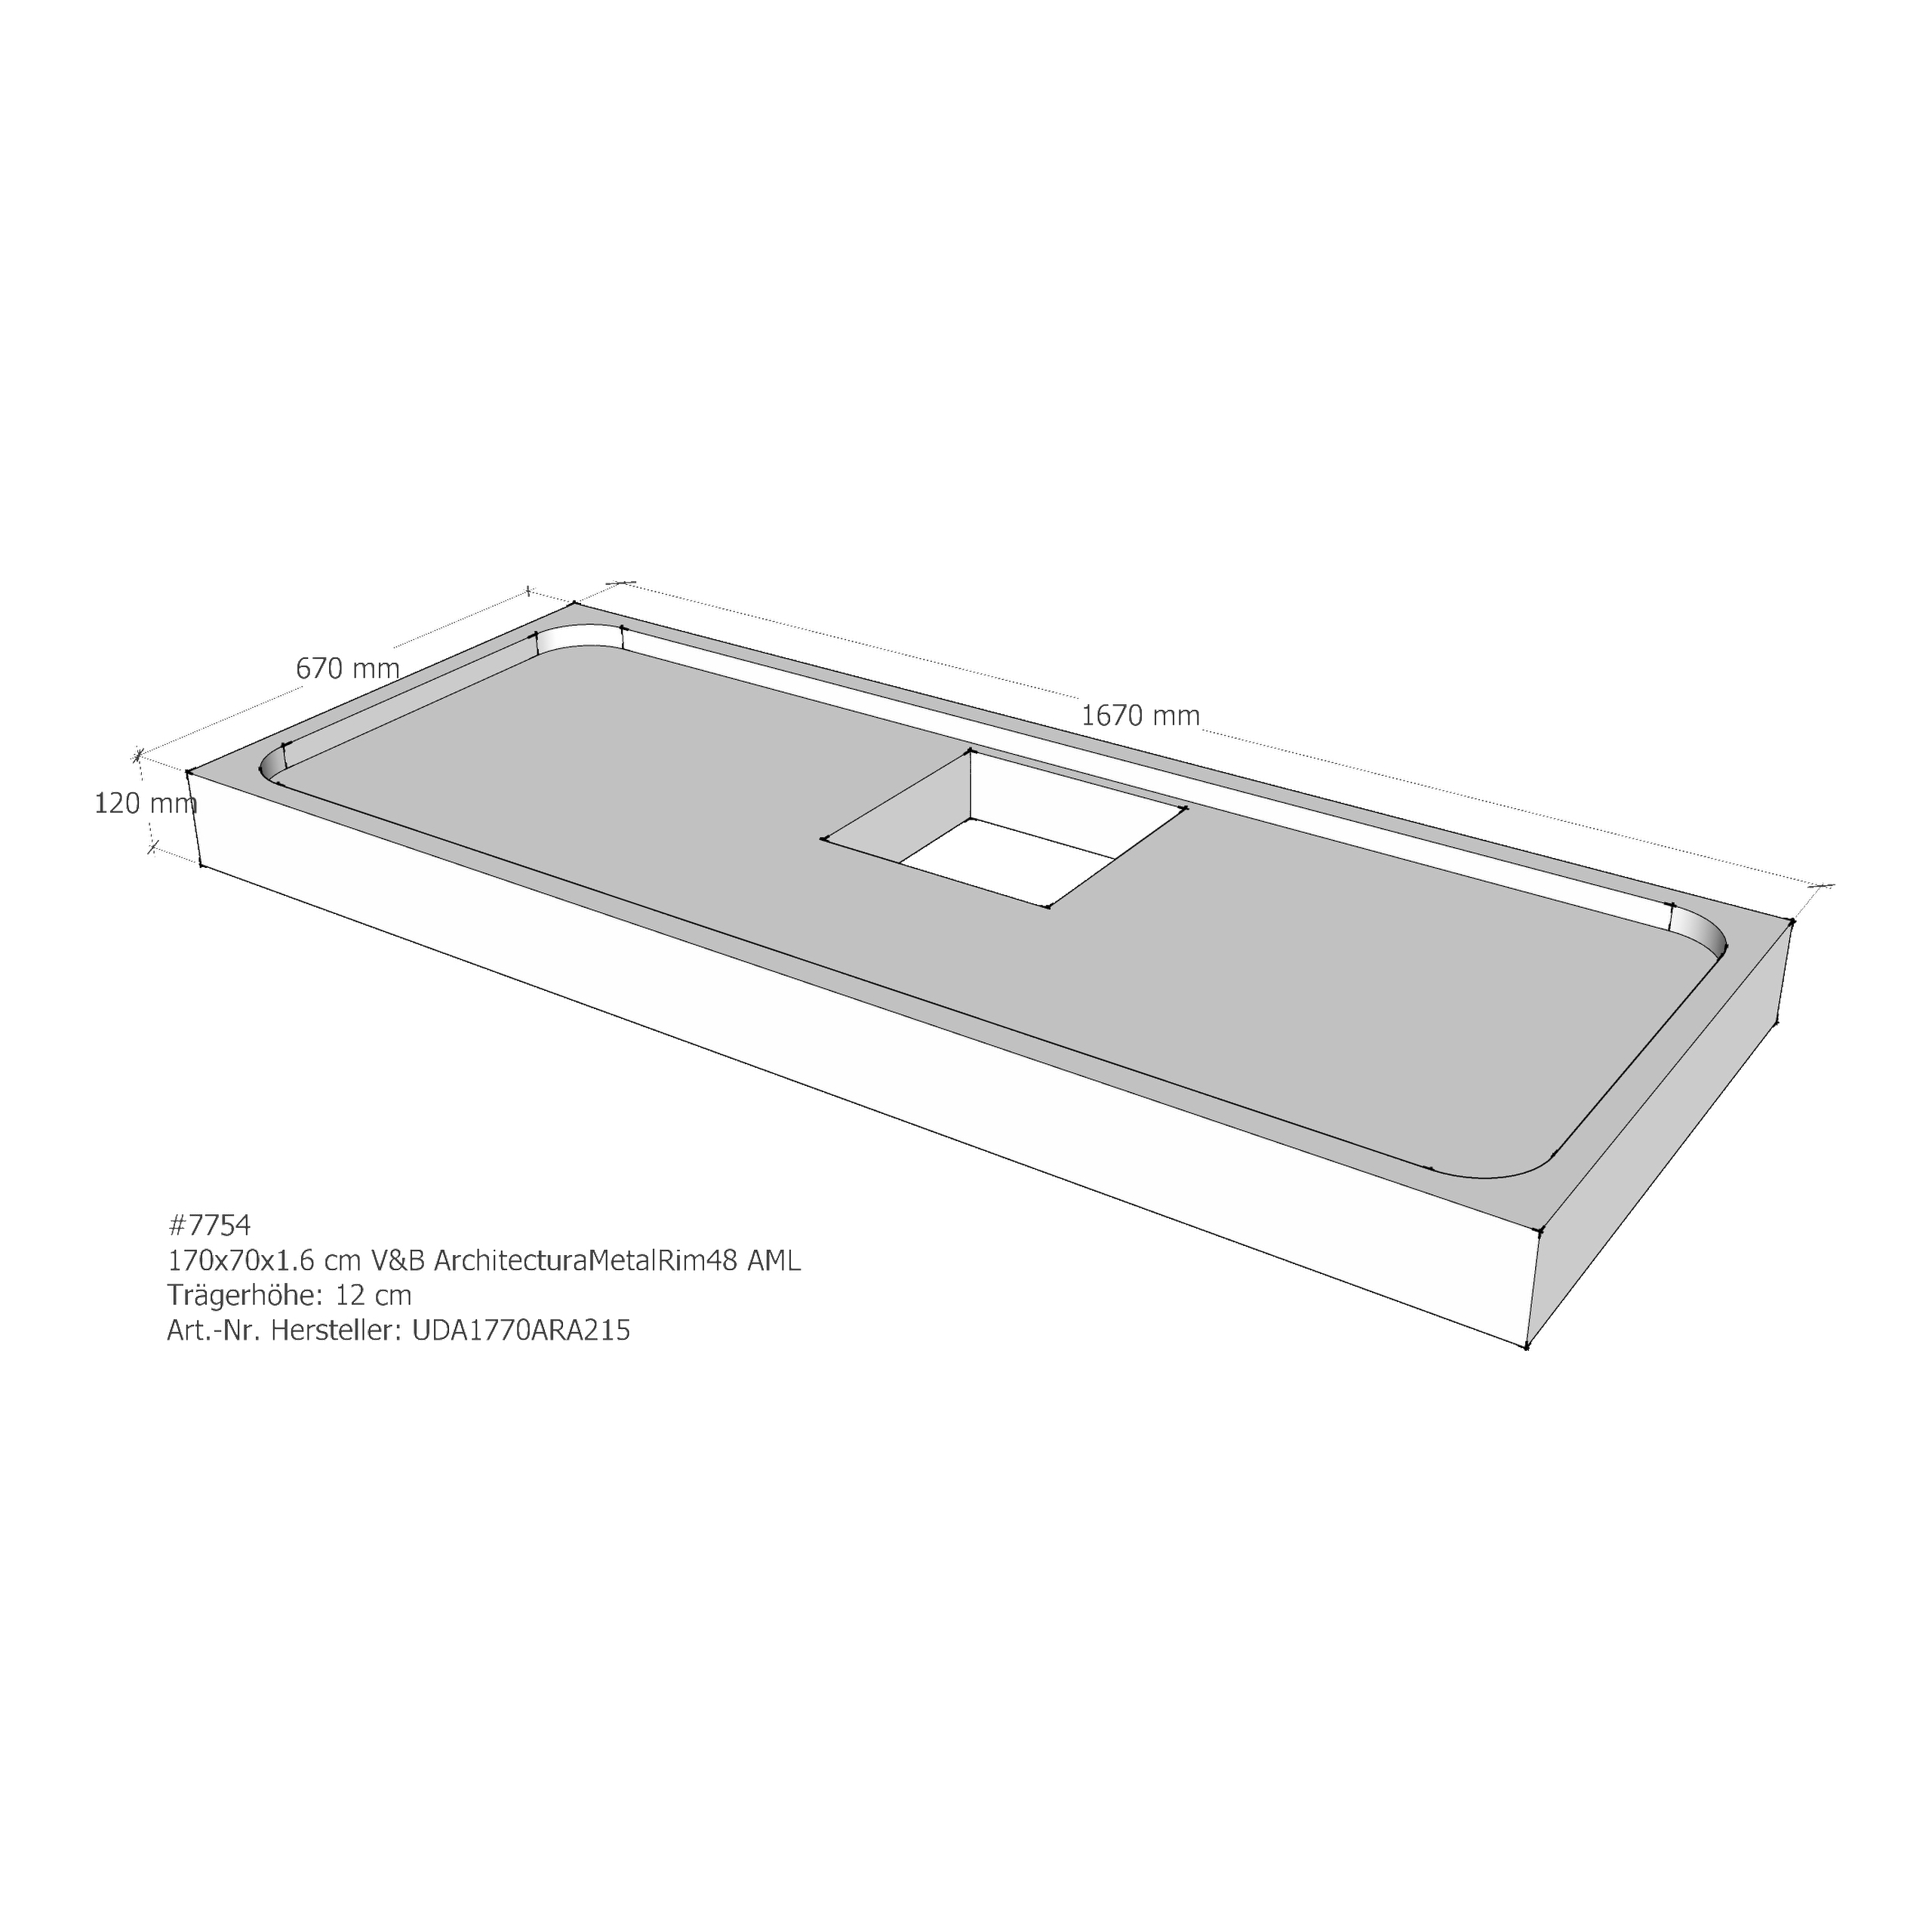 Duschwannenträger für Villeroy & Boch Architectura MetalRim 170 × 70 × 1,6 cm